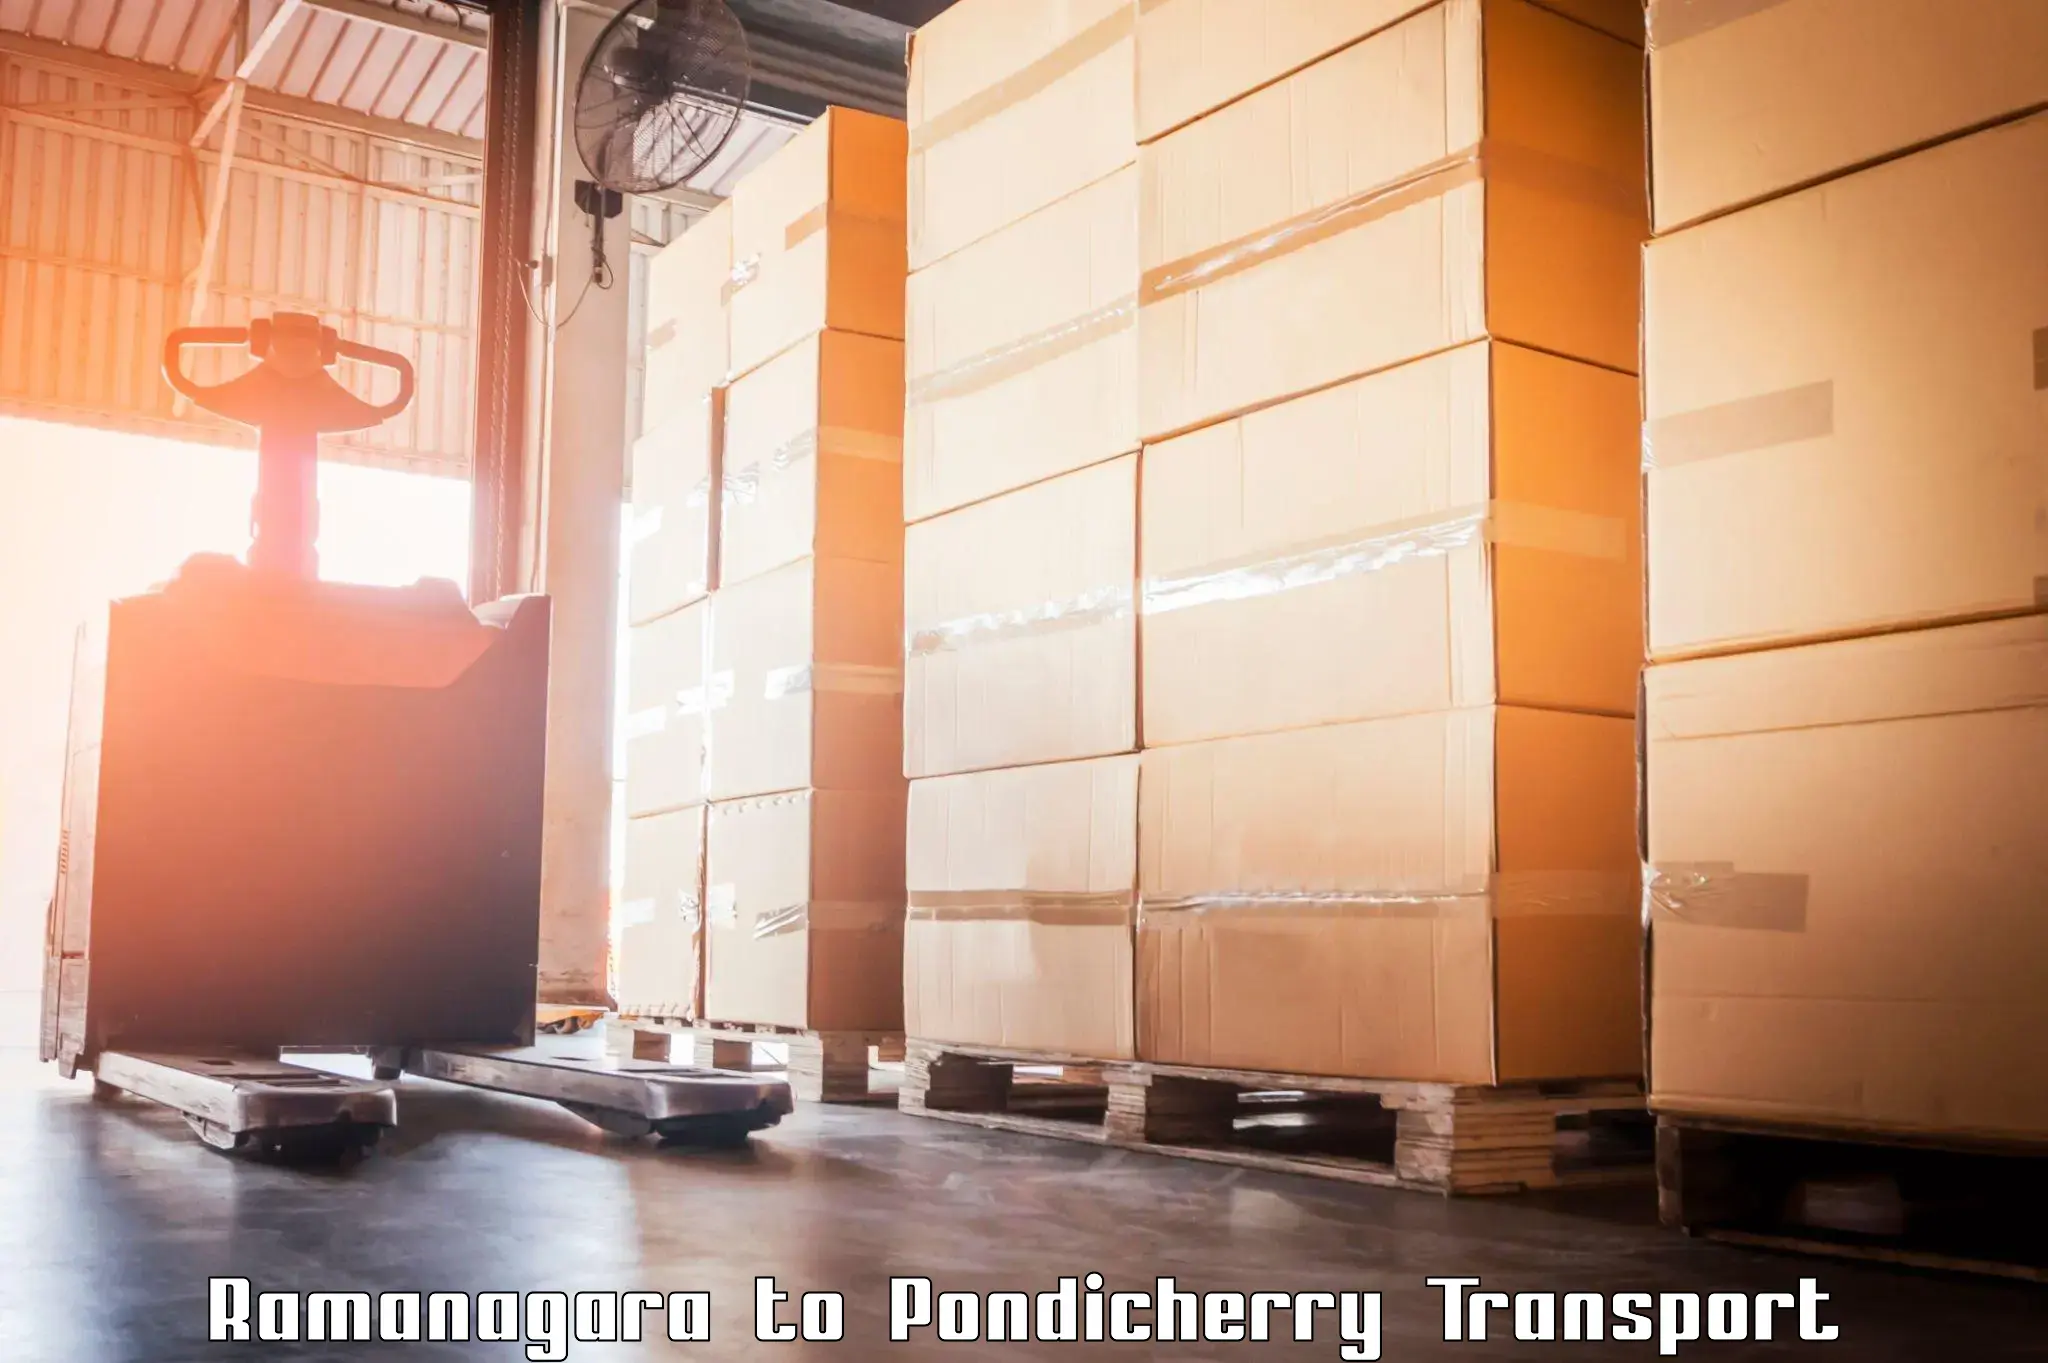 Land transport services Ramanagara to Pondicherry